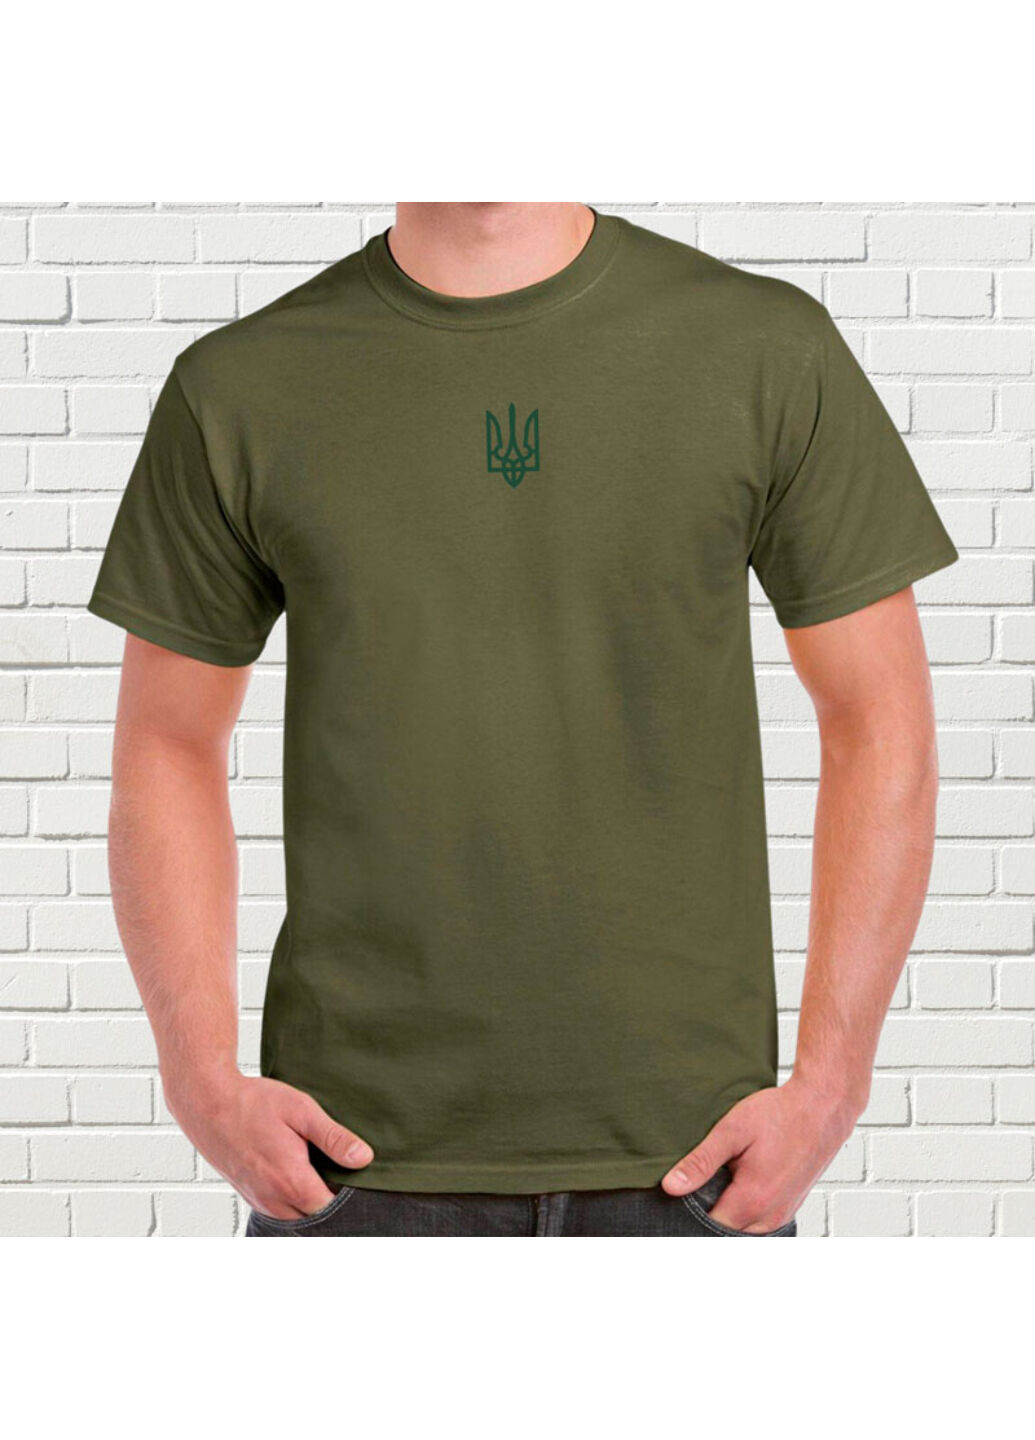 Хаки (оливковая) футболка з вишивкою зеленого тризуба мужская хаки 3xl No Brand